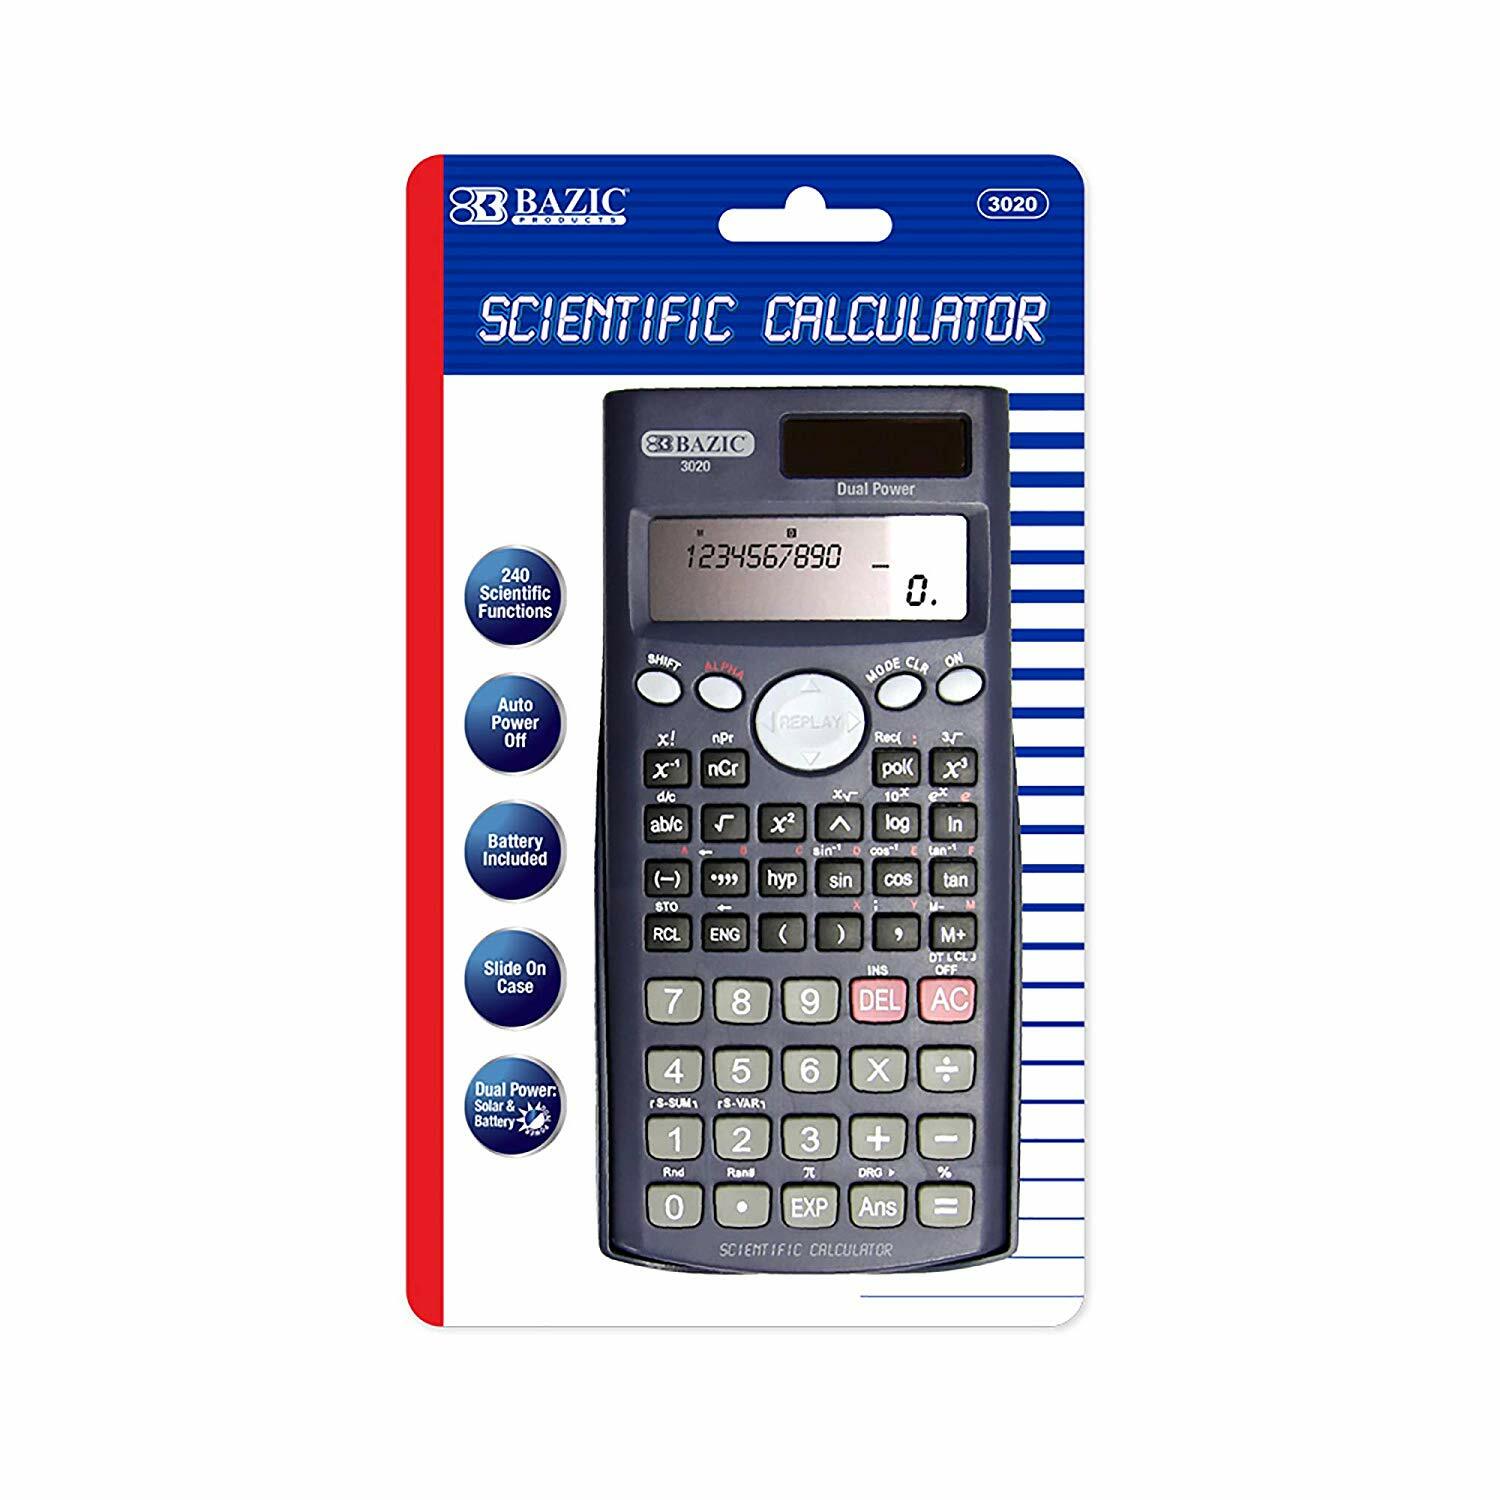 Calculator Bazic/Scientific 240F (3020)